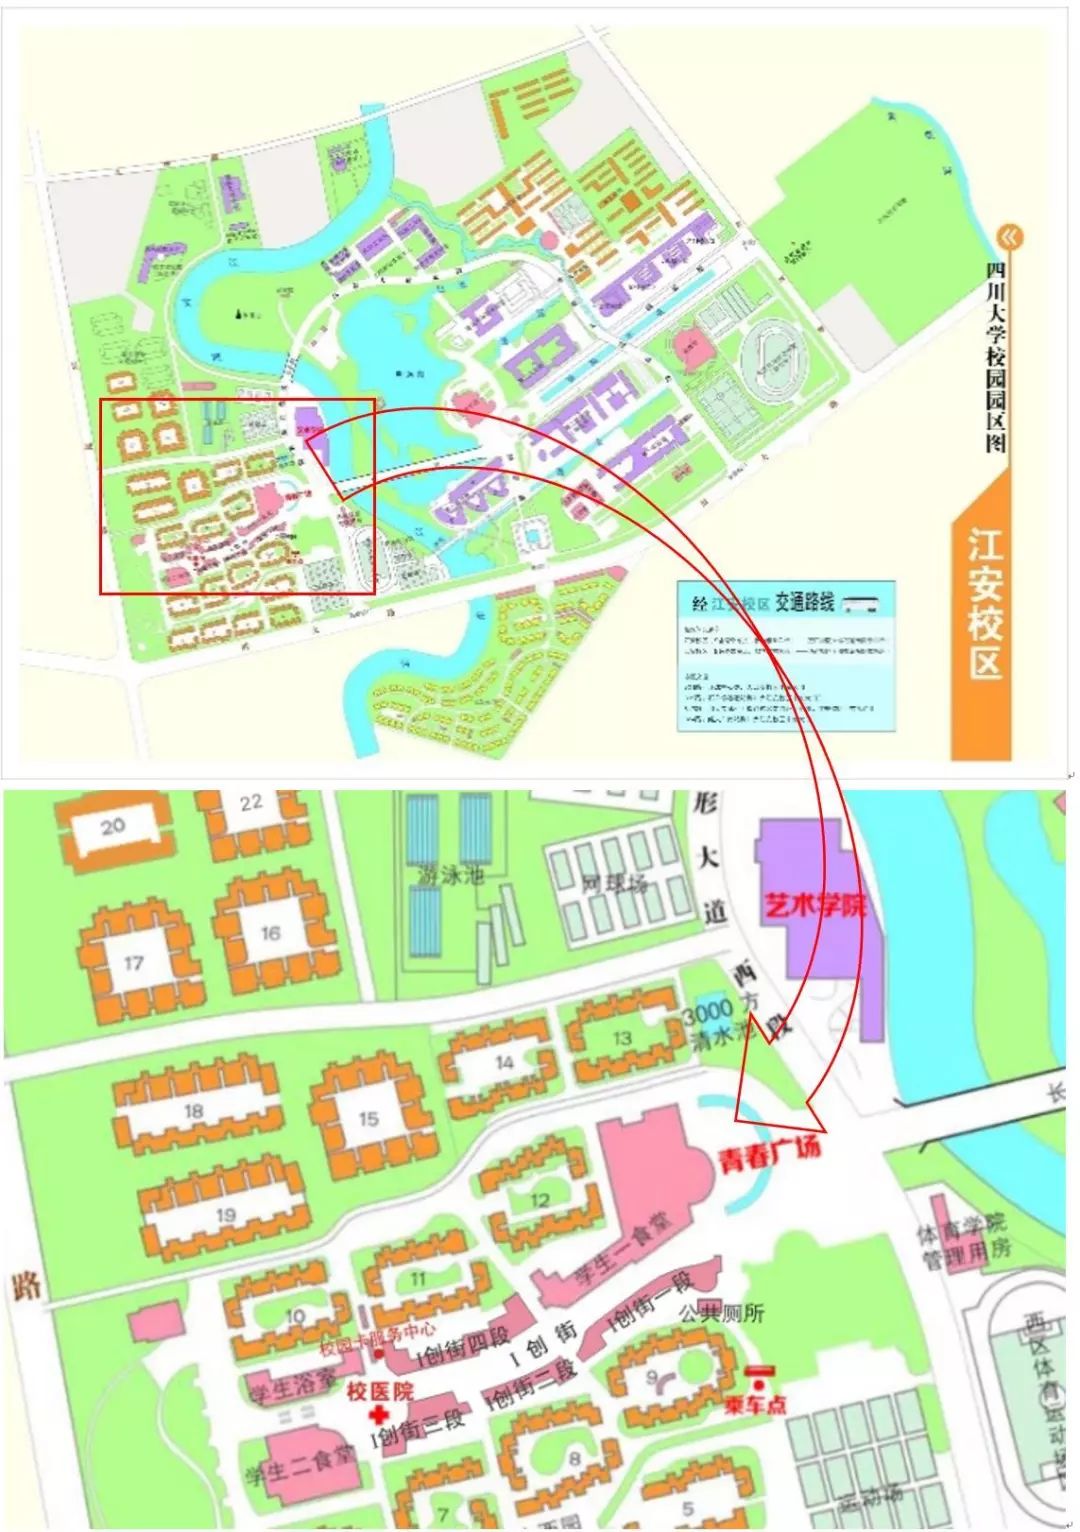 2019级本科生现场报到的地点是四川大学江安校区青春广场.